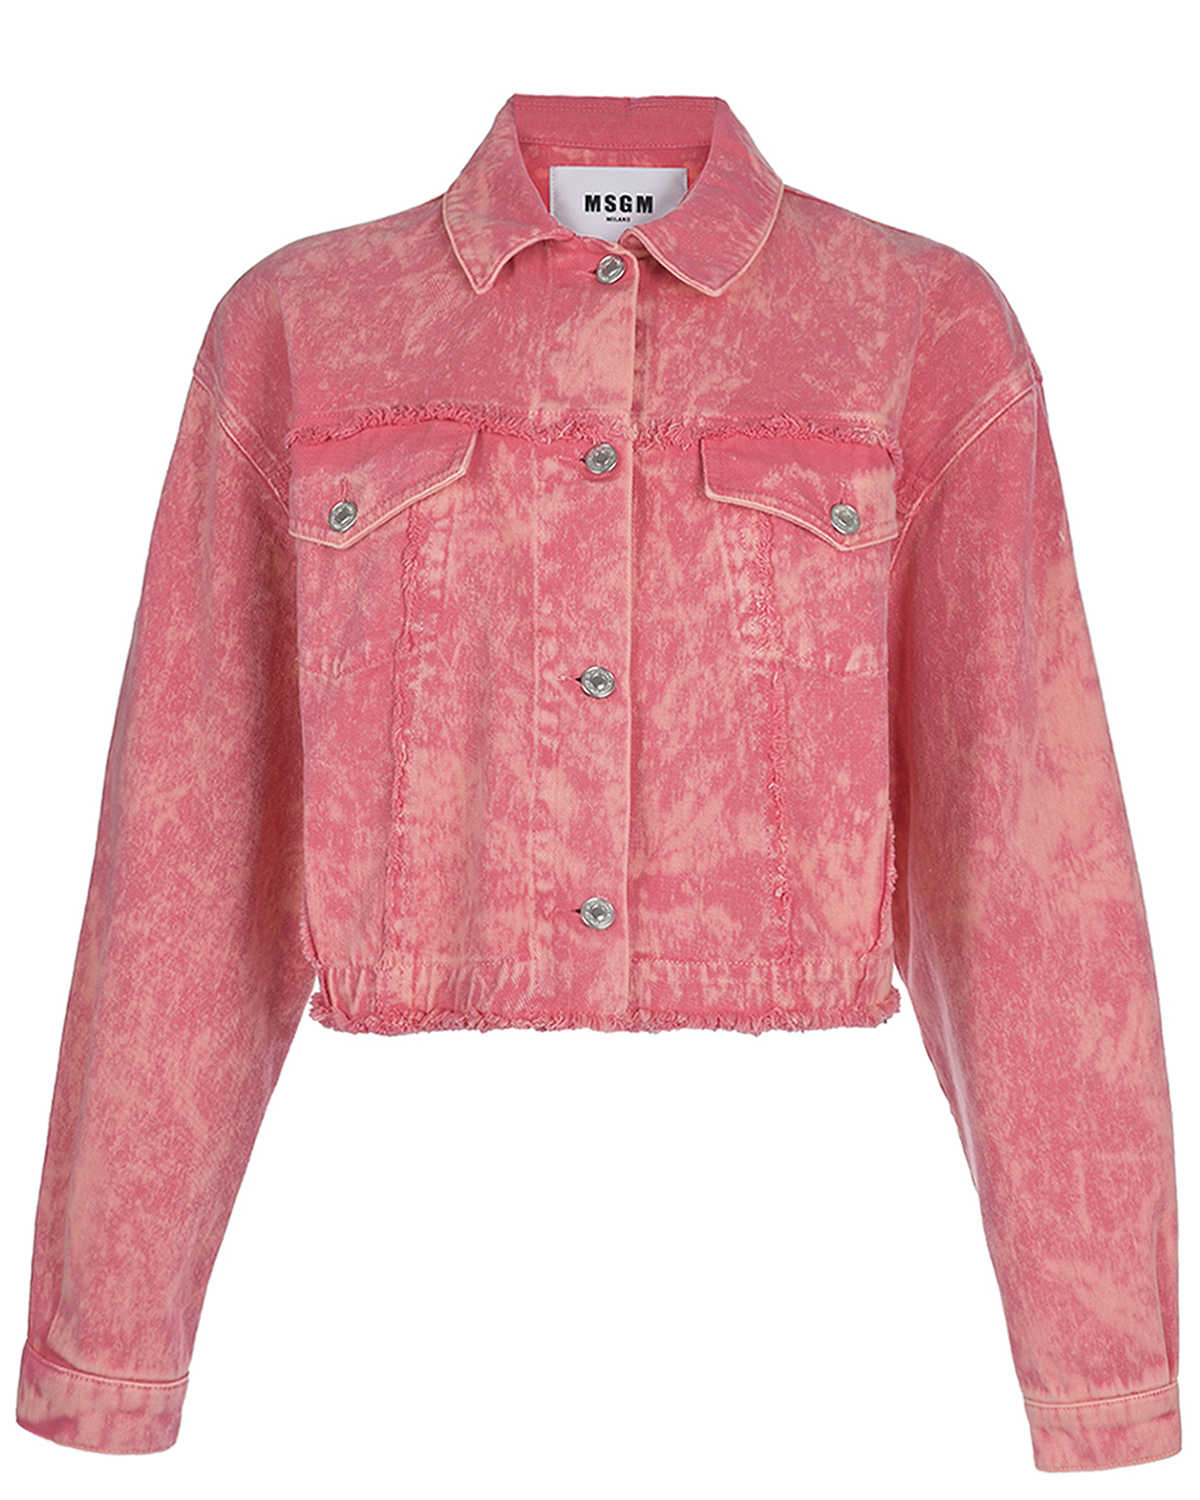 Розовая джинсовая куртка с принтом "tie-dye" MSGM, размер 42, цвет розовый